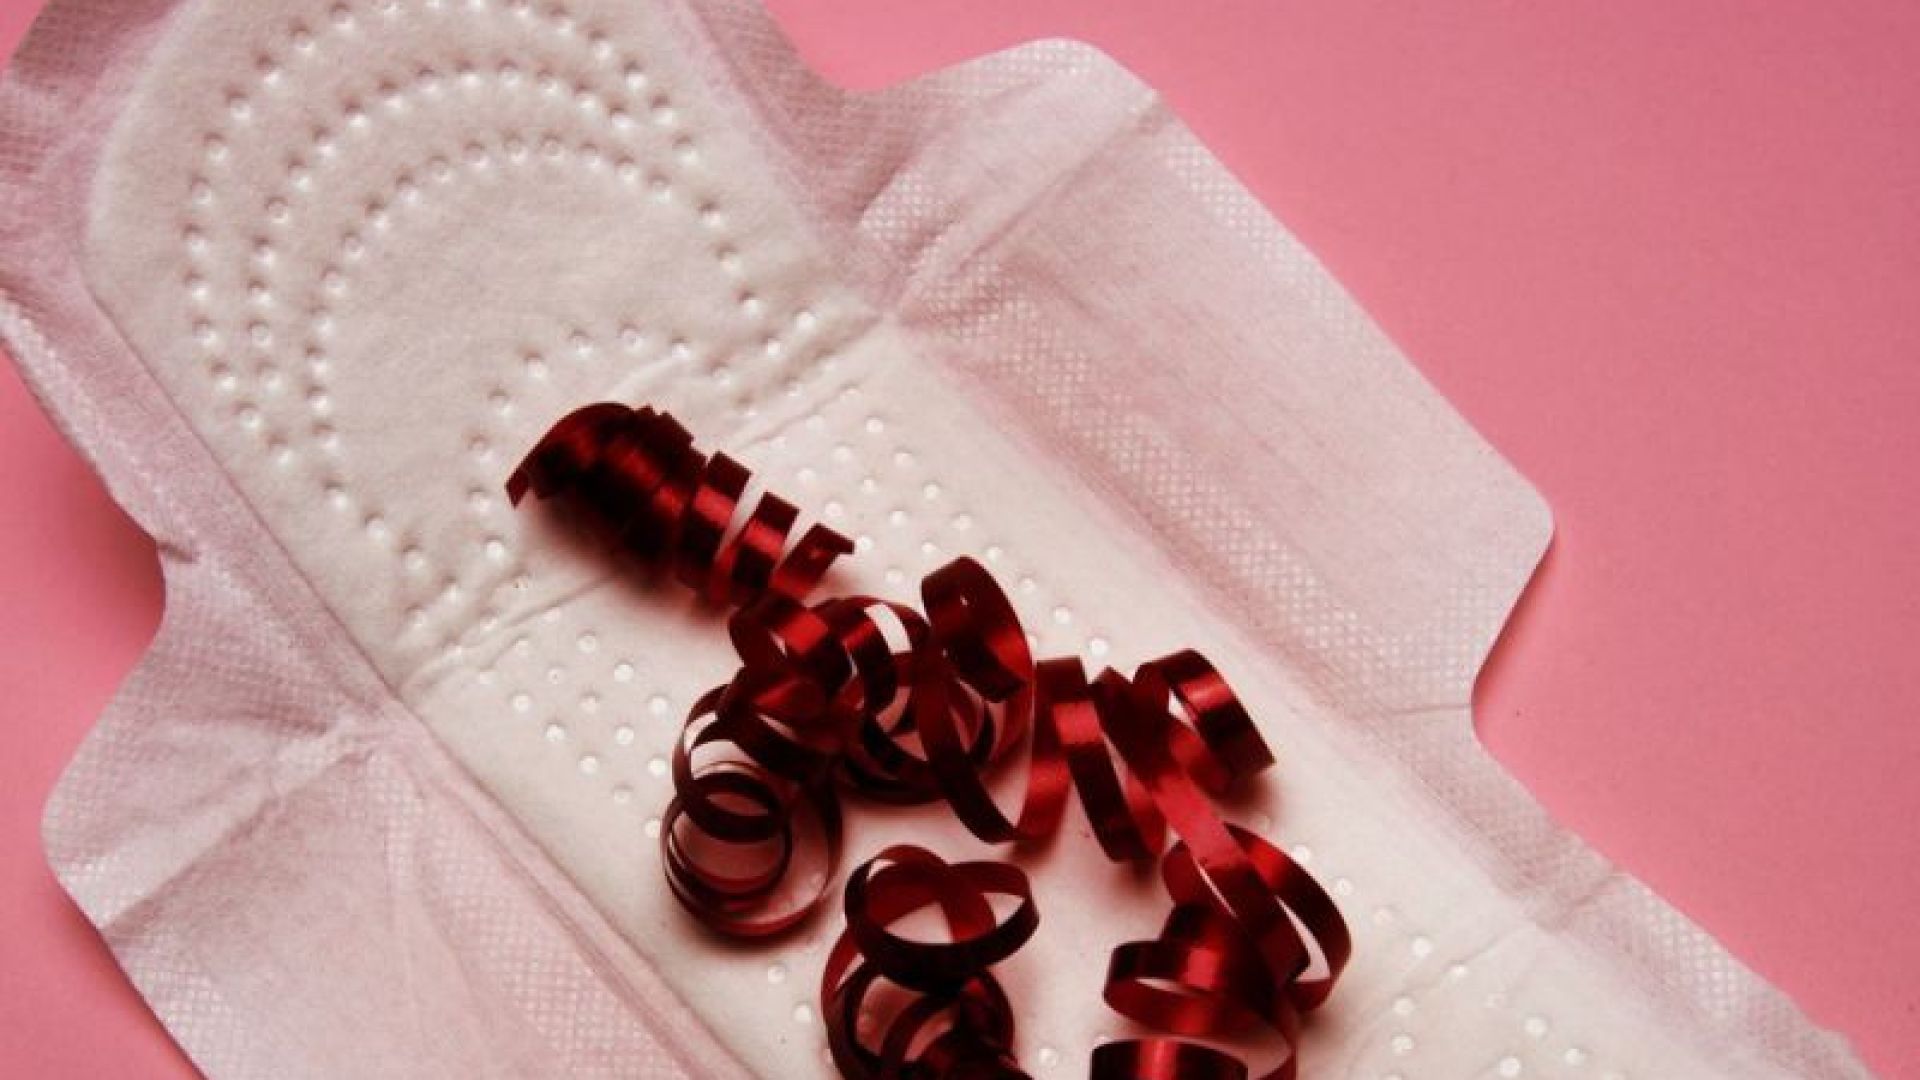 Perbedaan Warna Darah Saat Menstruasi dan Warna Darah Saat Sedang Hamil